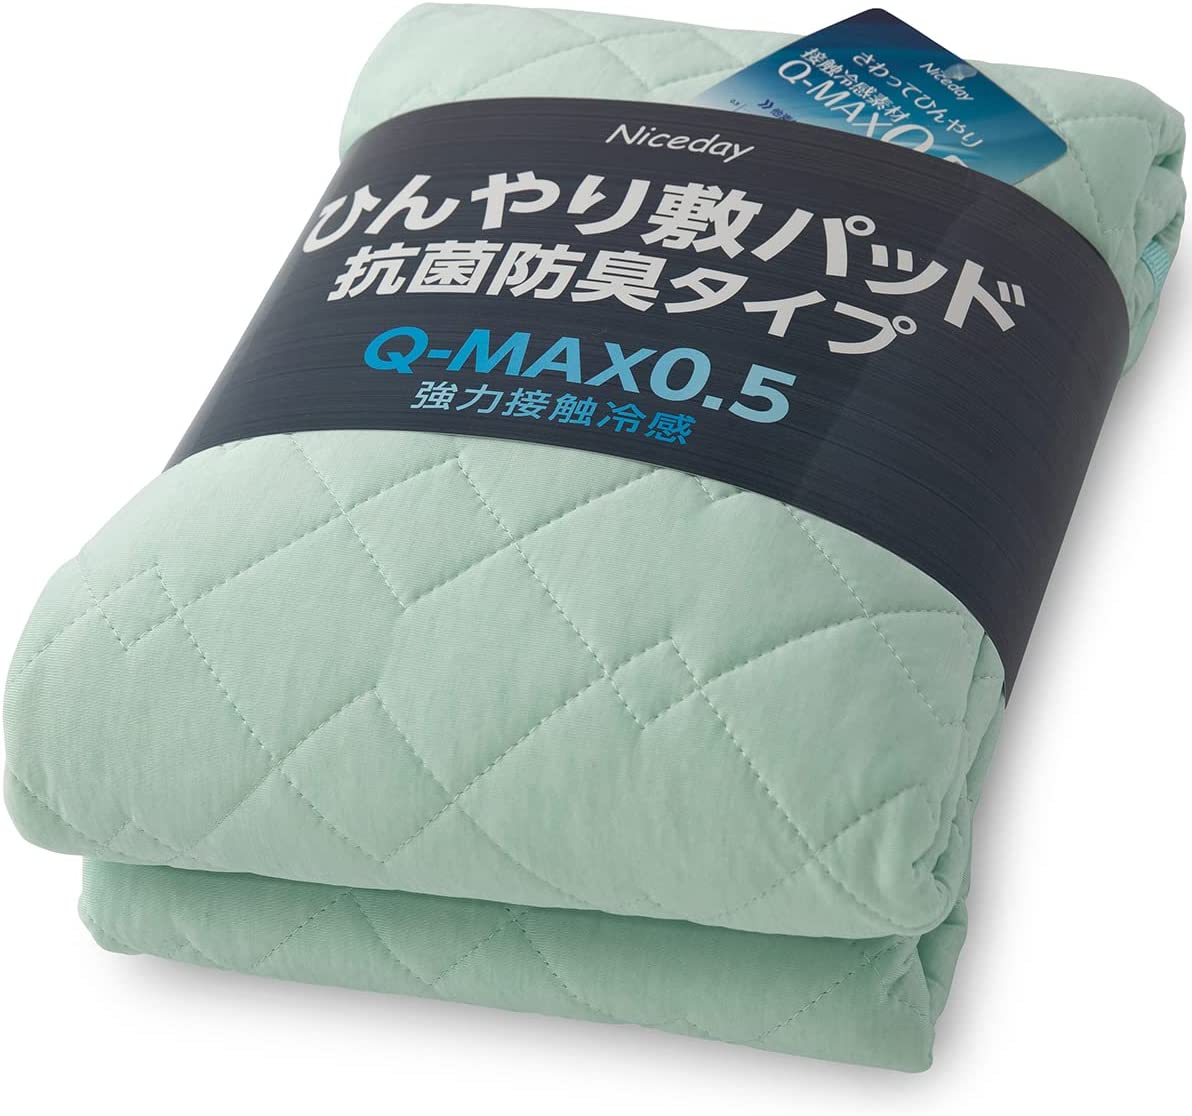 【日本代購】Niceday 涼爽 床墊 觸感清涼 Q-max0.542 可洗 褥墊 抗菌 防臭 雙面可用 淡綠